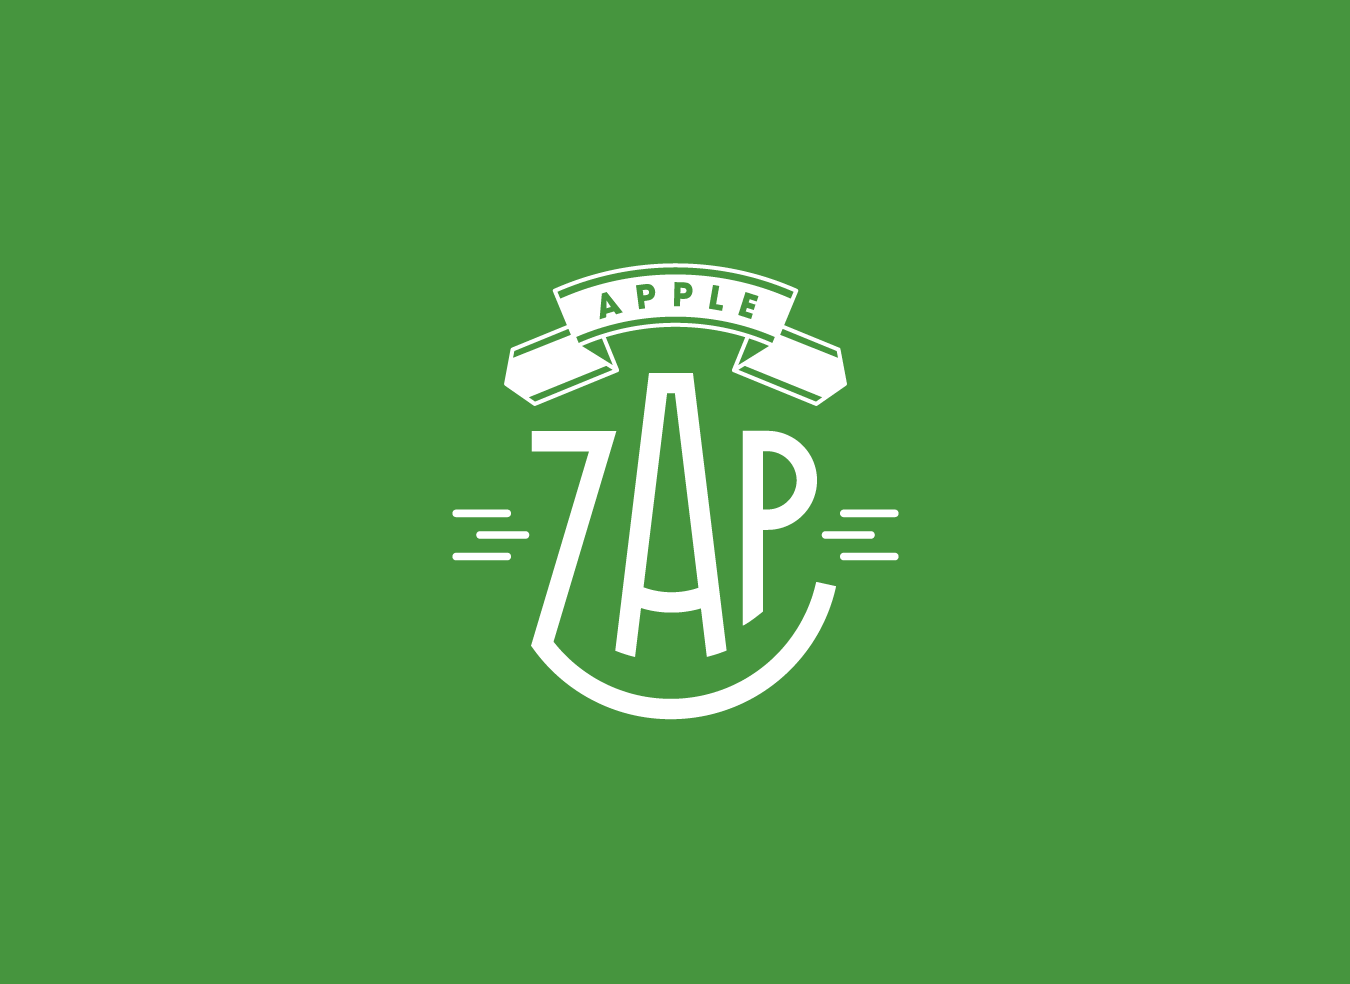 Apple Zap logo